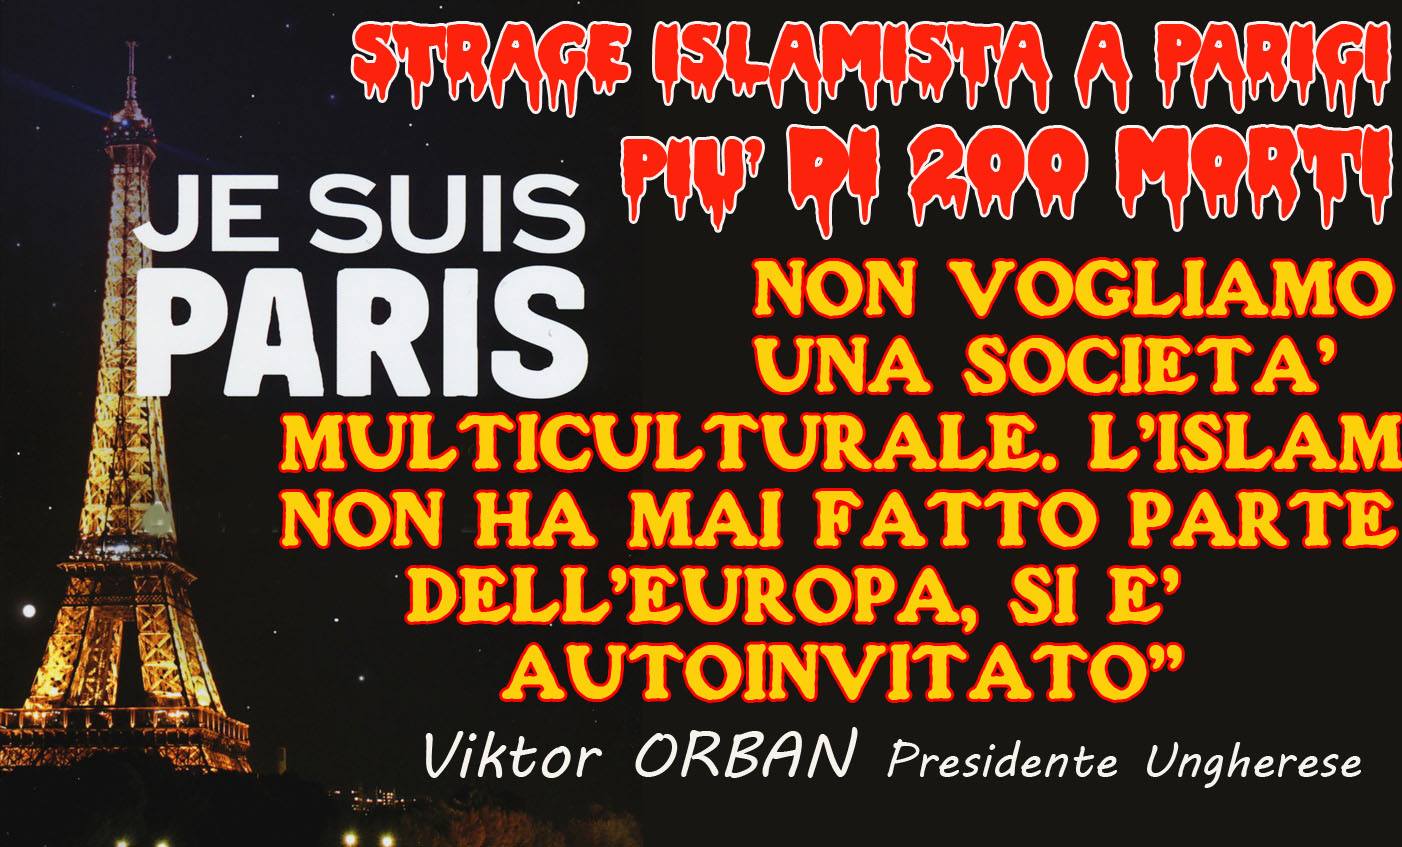 ISLAM RADICALE.. STRAGE A PARIGI .. MA IN EUROPA NON SONO TUTTI RENZI E ALFANO.. DA DESTRA ORBAN IN UNGHERIA, DA SINISTRA FICO IN SLOVACCHIA HANNO IDEE PIU’ CHIARE ! […]